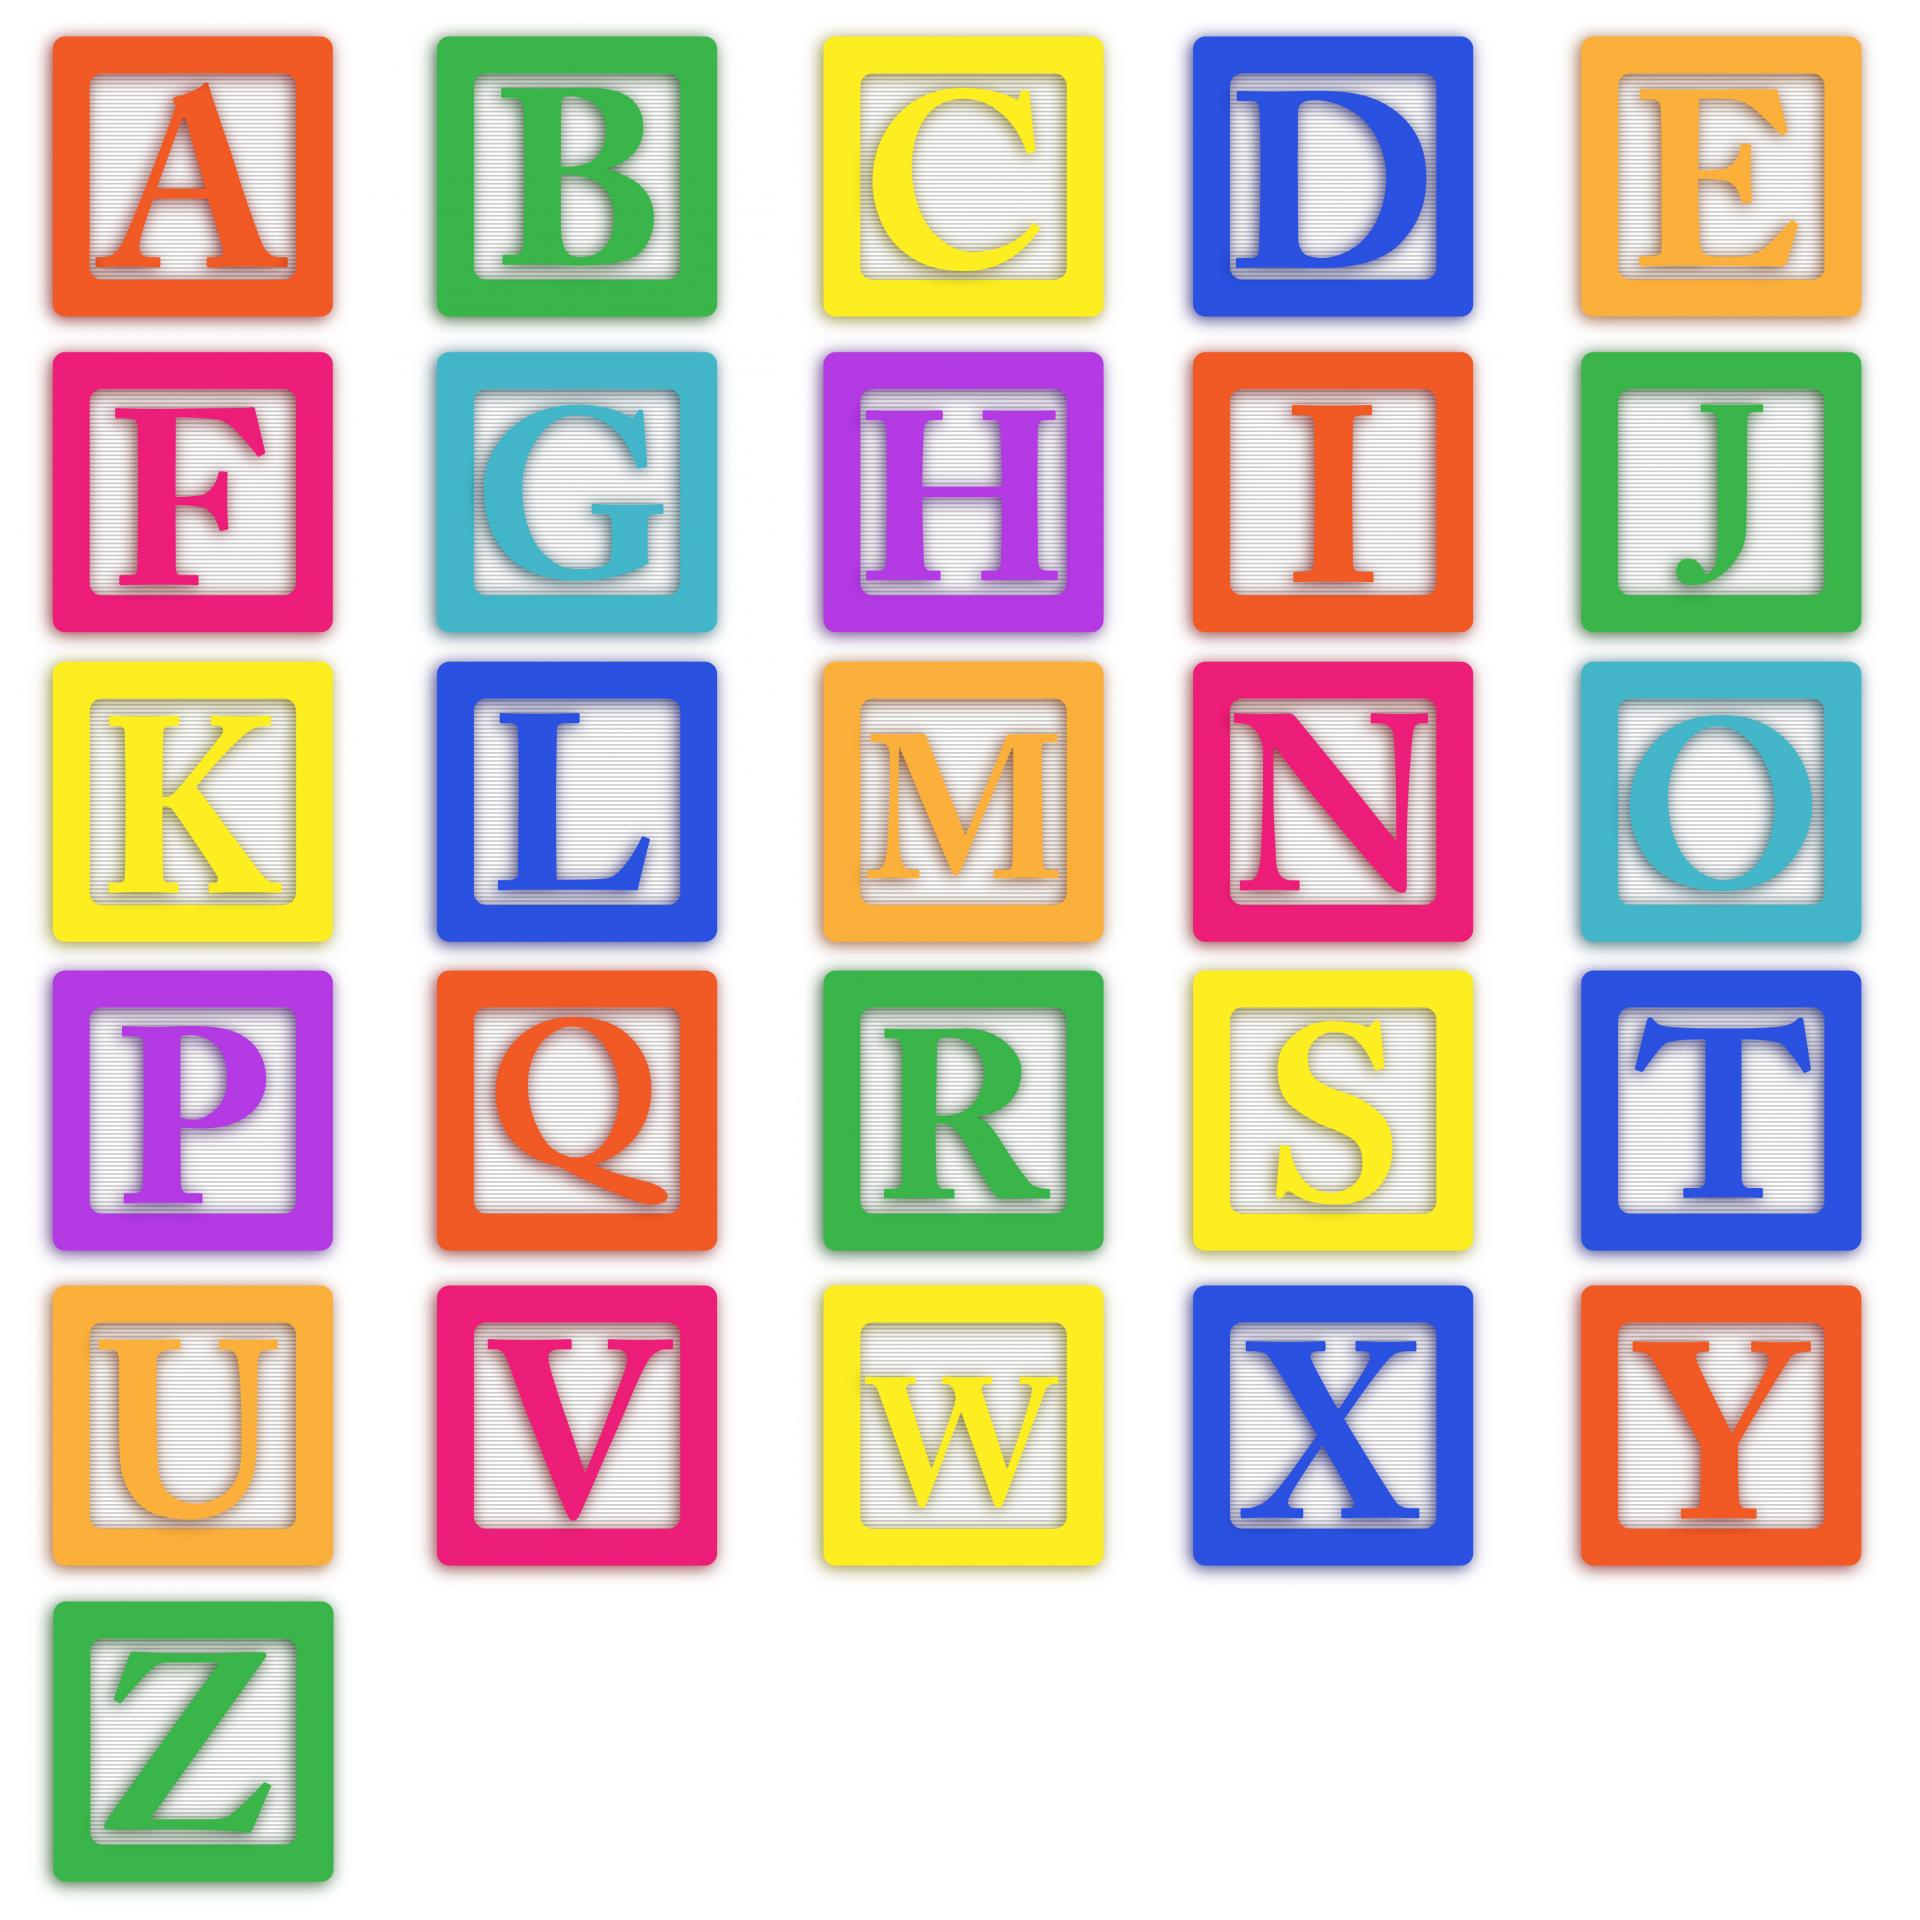 16-wooden-block-letters-font-images-wooden-alphabet-block-font-block